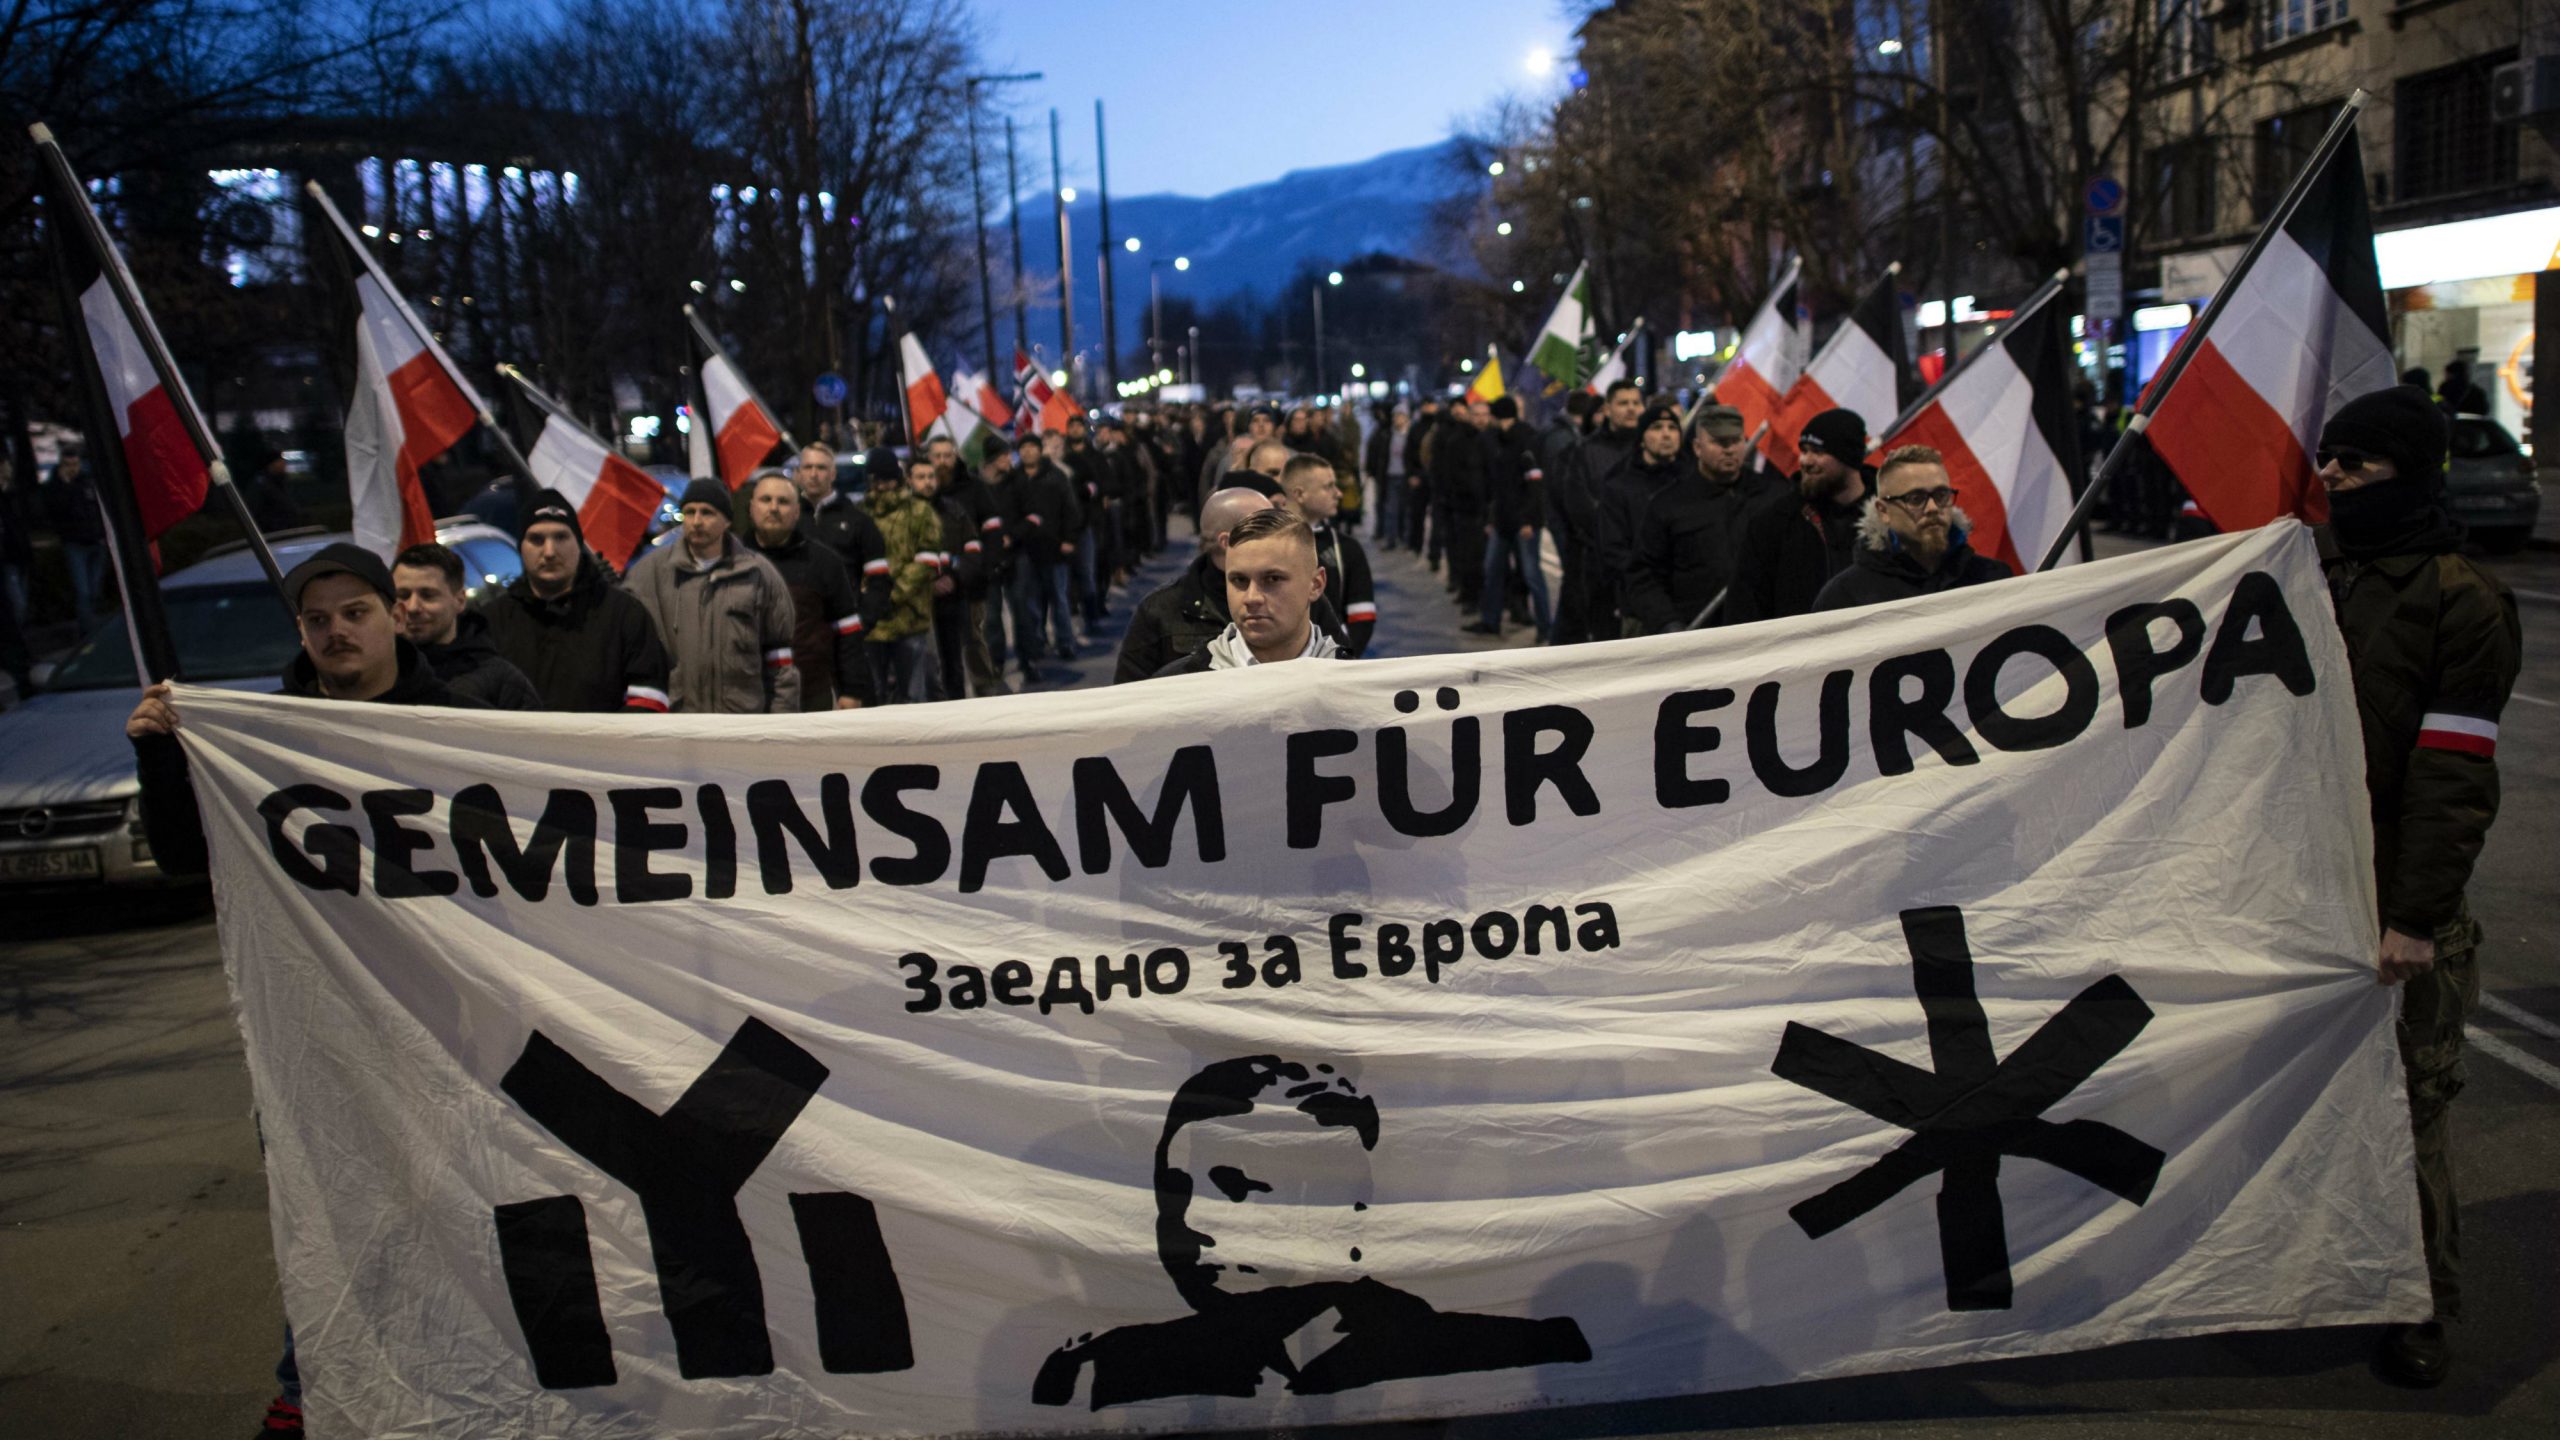 Bugarski nacionalisti održali skup u čast pronacističkom generalu 1